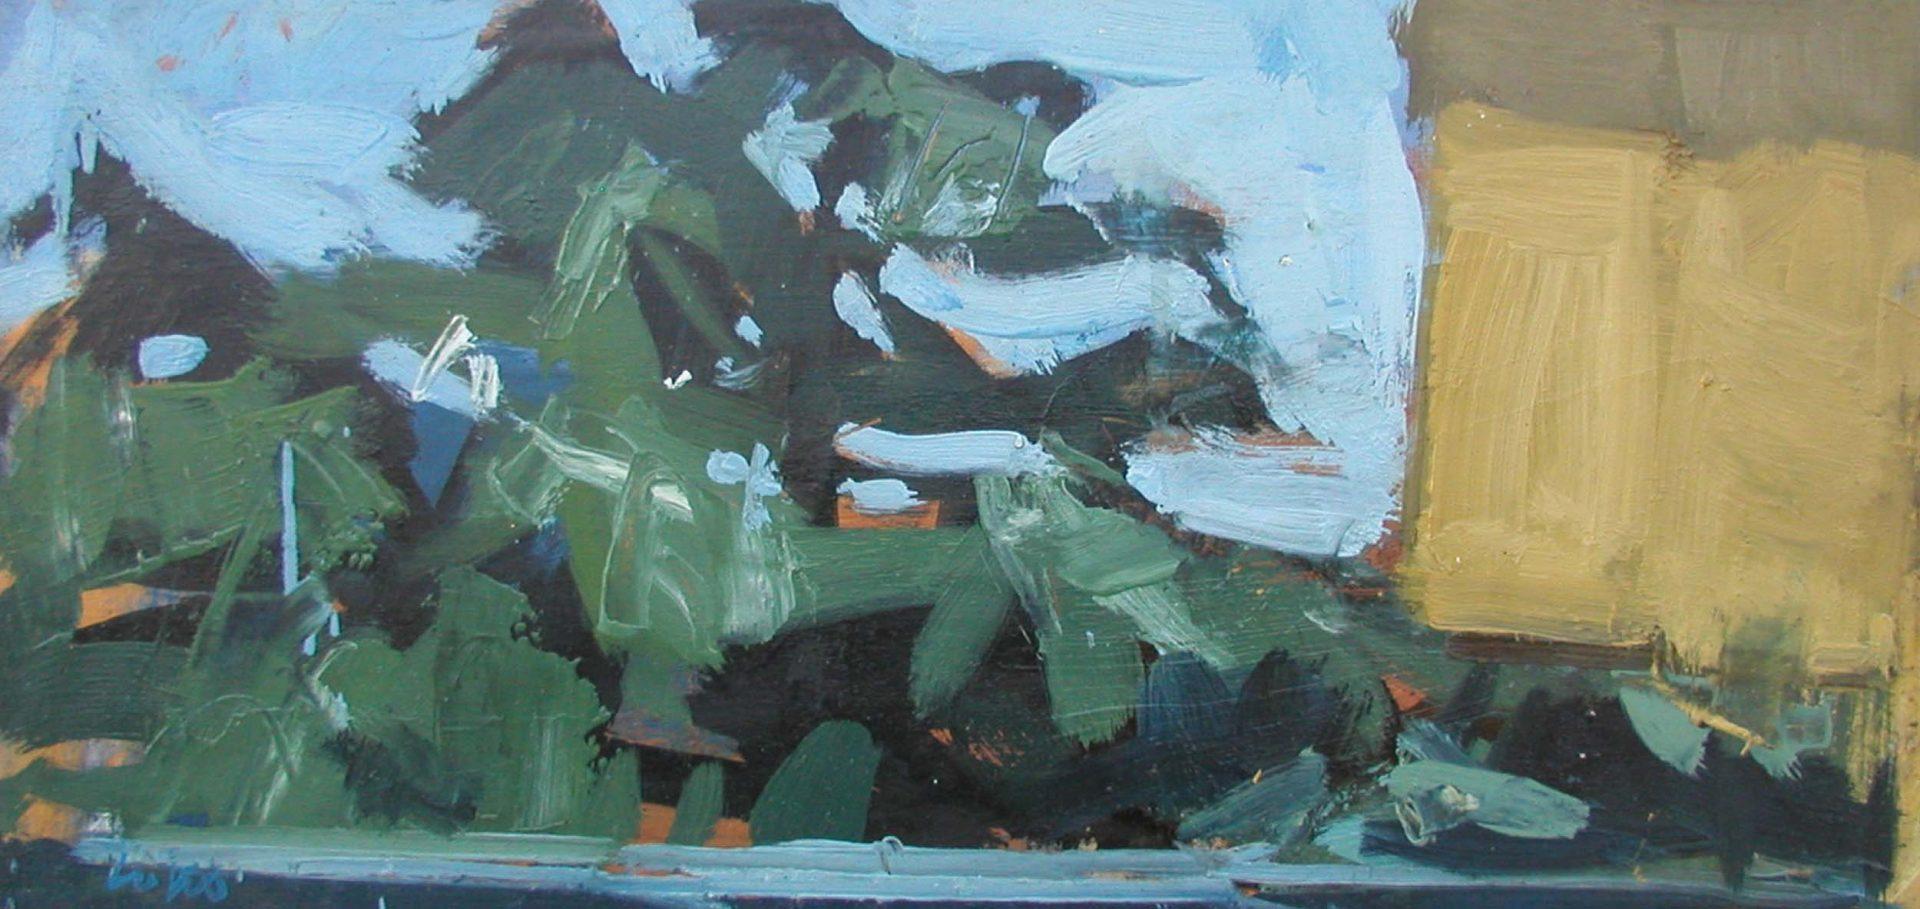 LOTTO0073 Il cedro di fronte olio su tavola cm 25.1x52.4 - 2007